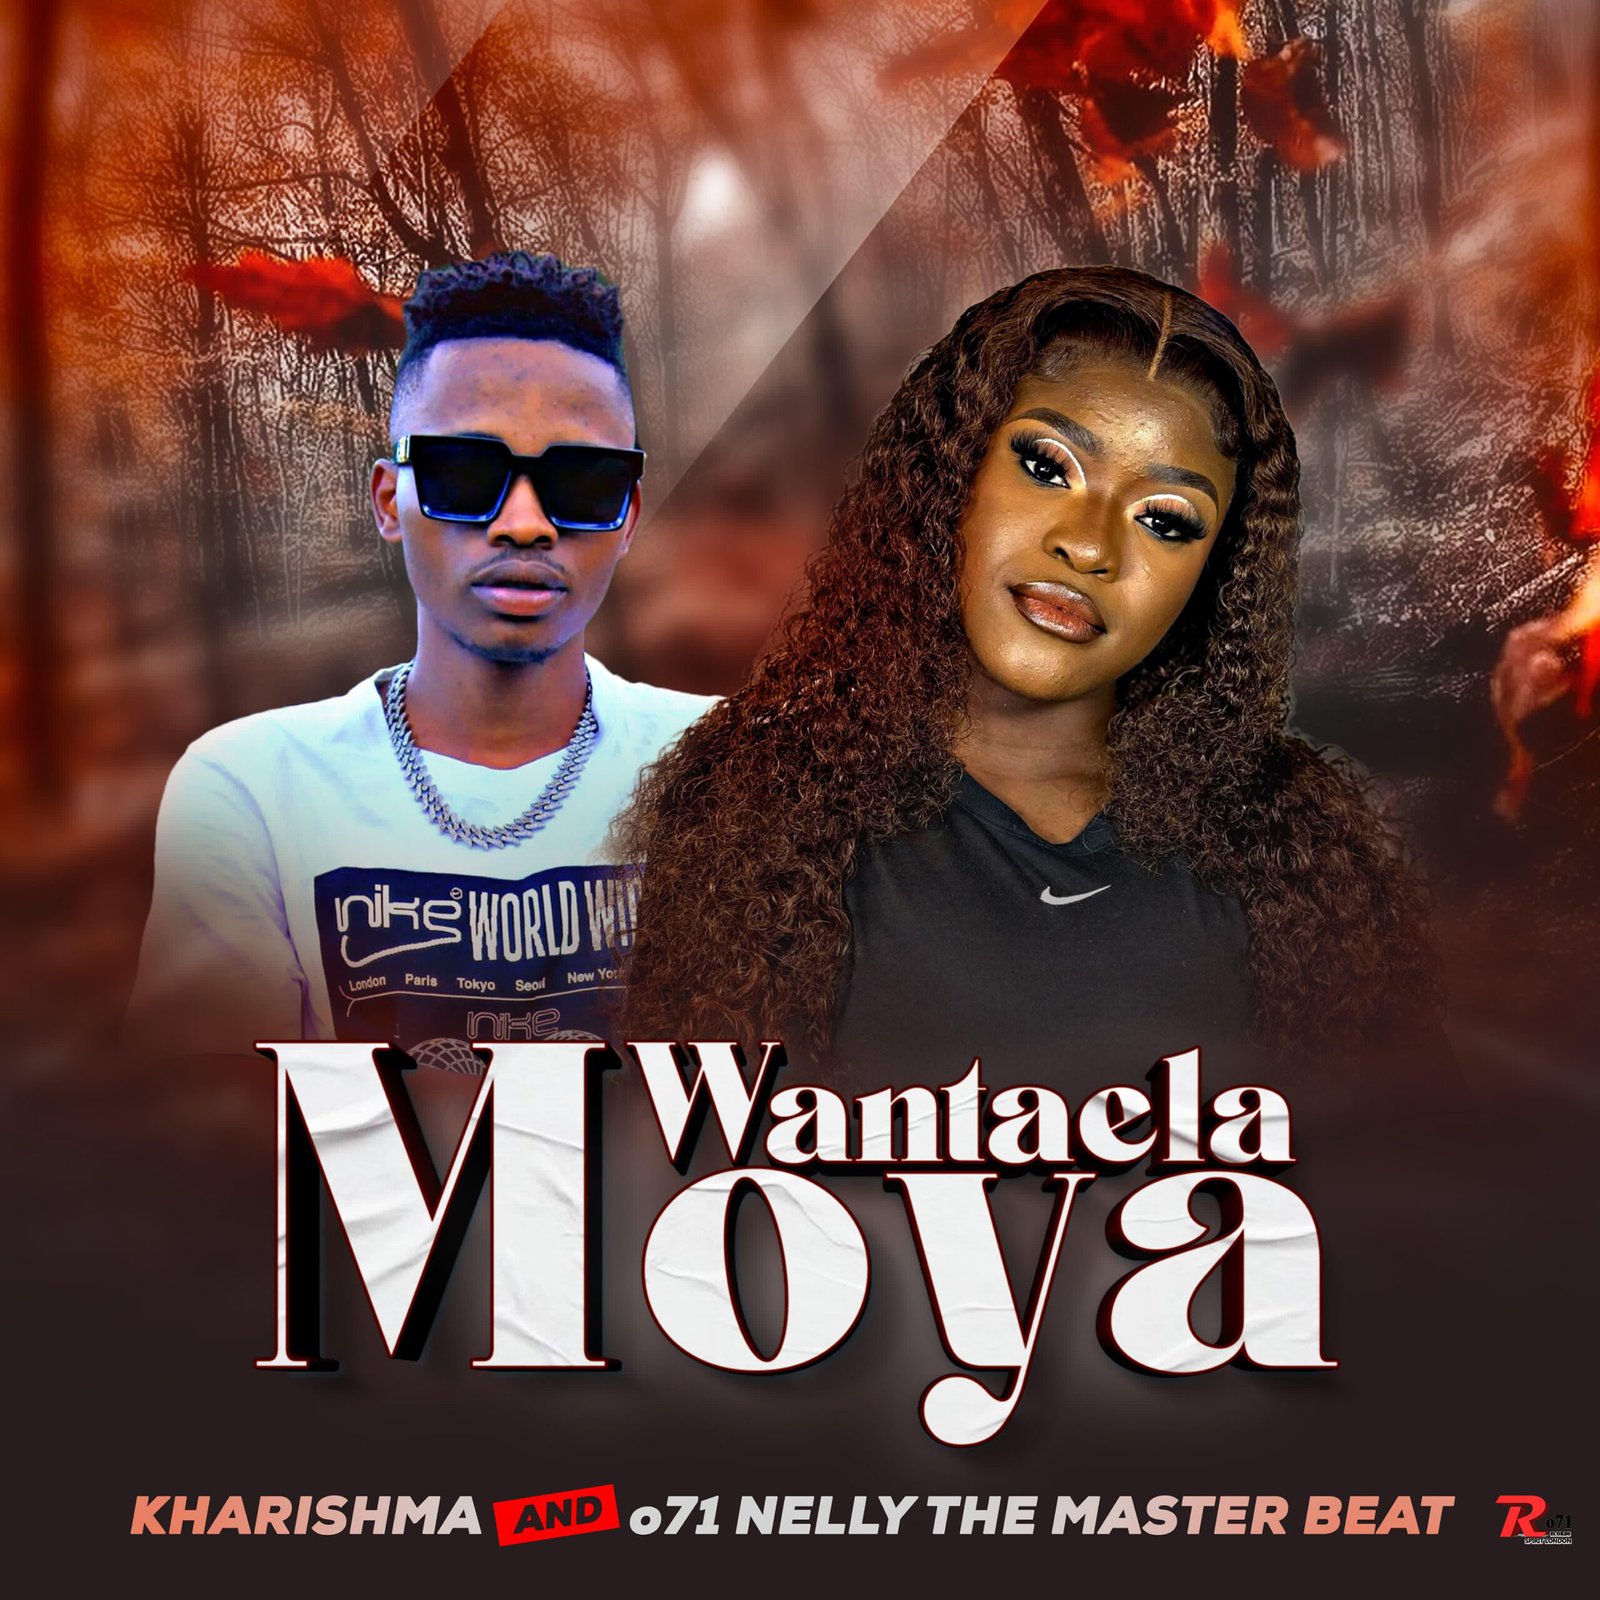 wantayela moya - Kharishma & o71 Nelly The Master Beat@bolomp3.com